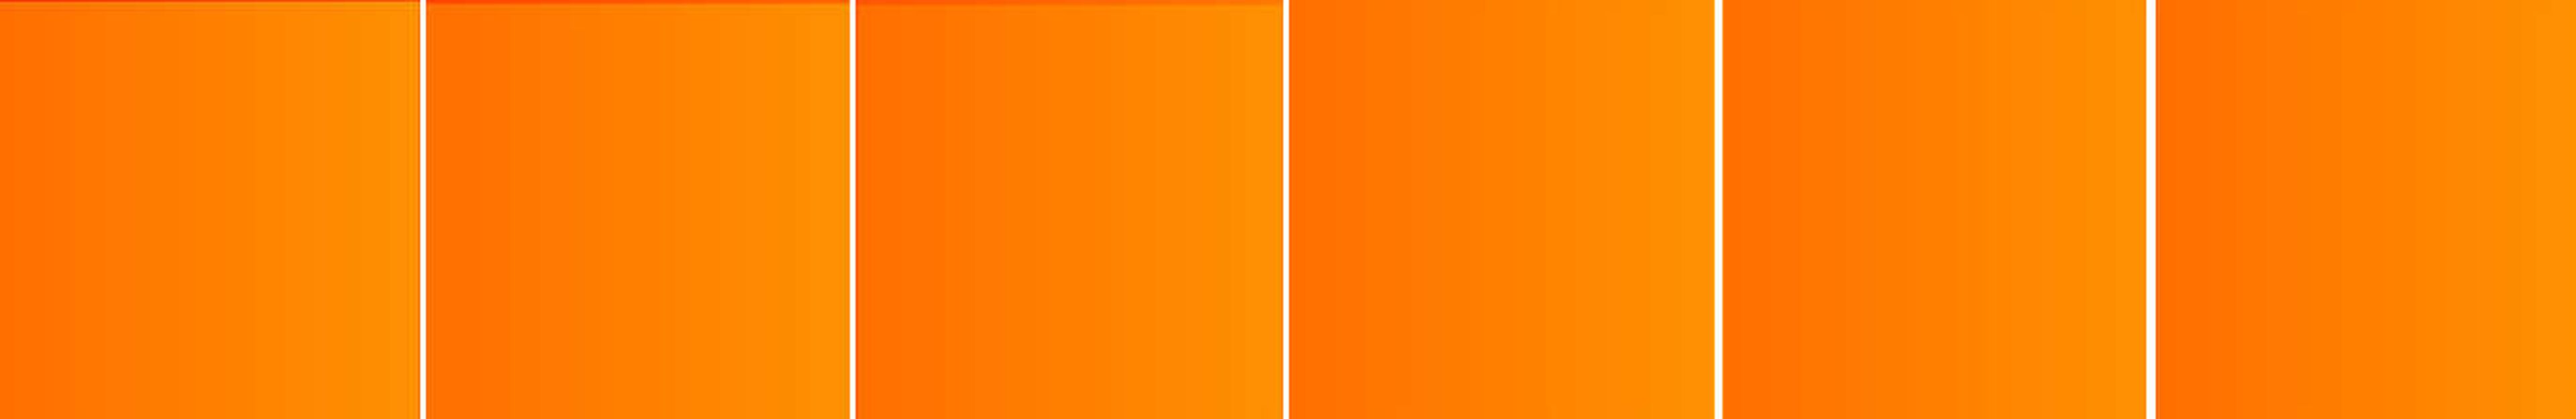 Ilusión óptica cuadrados naranjas